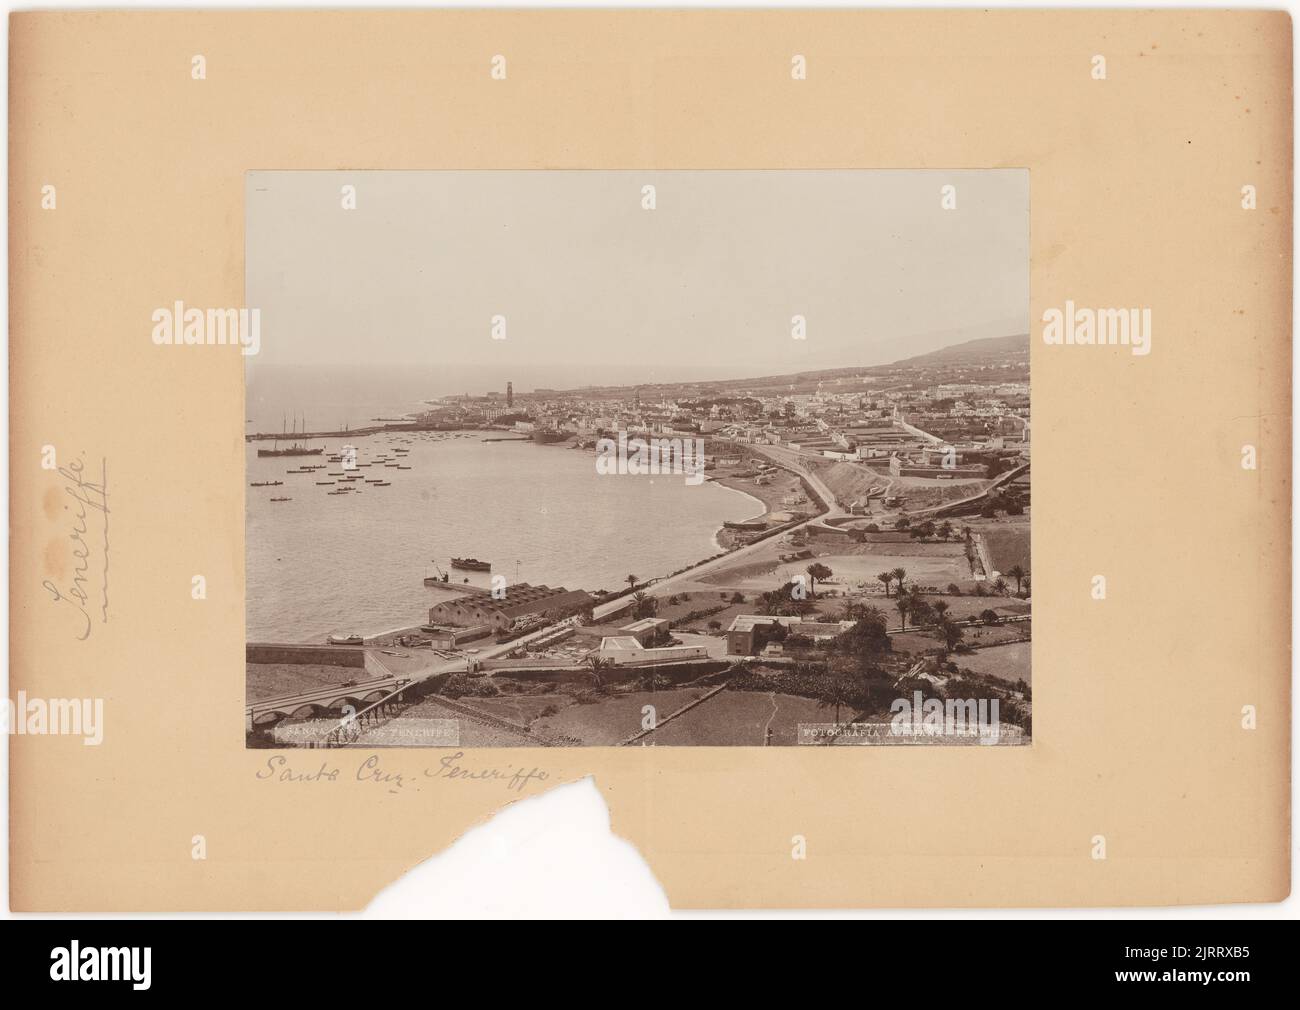 Santa Cruz, Teneriffe, 1890s, by Alemana. Stock Photo